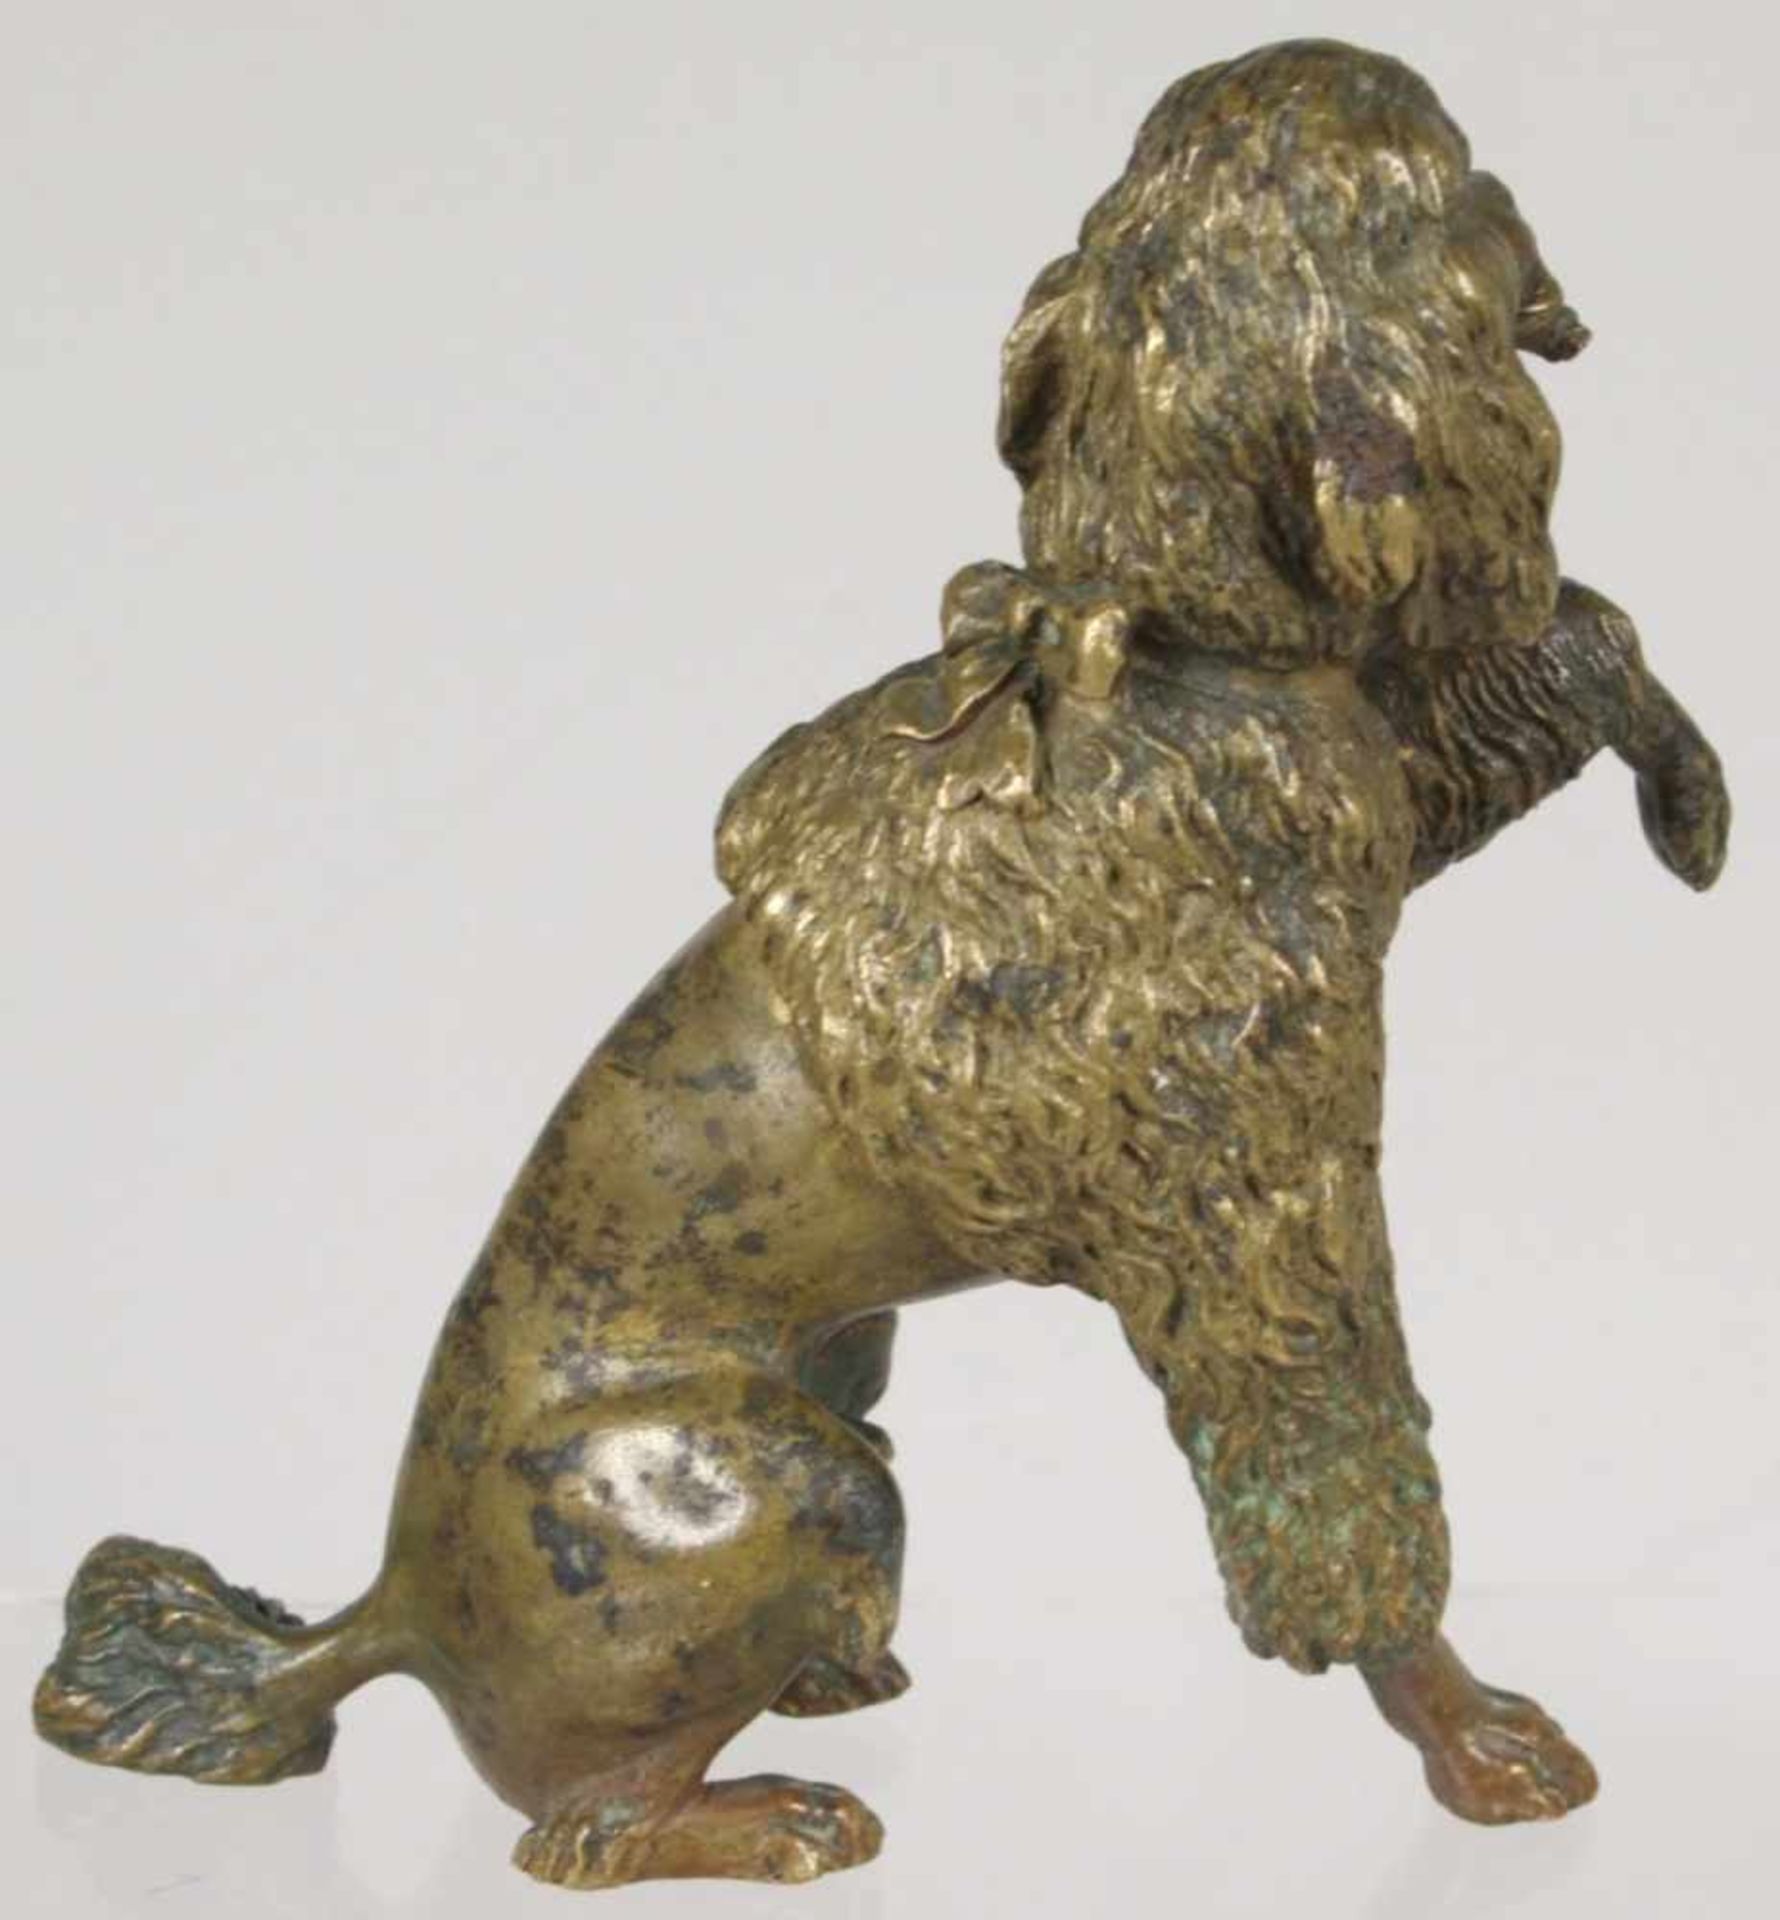 Bronze-Tierplastik, "Pudel", anonymer Bildhauer um 1900, naturalistische, sitzendeDarstellung mit - Bild 2 aus 3